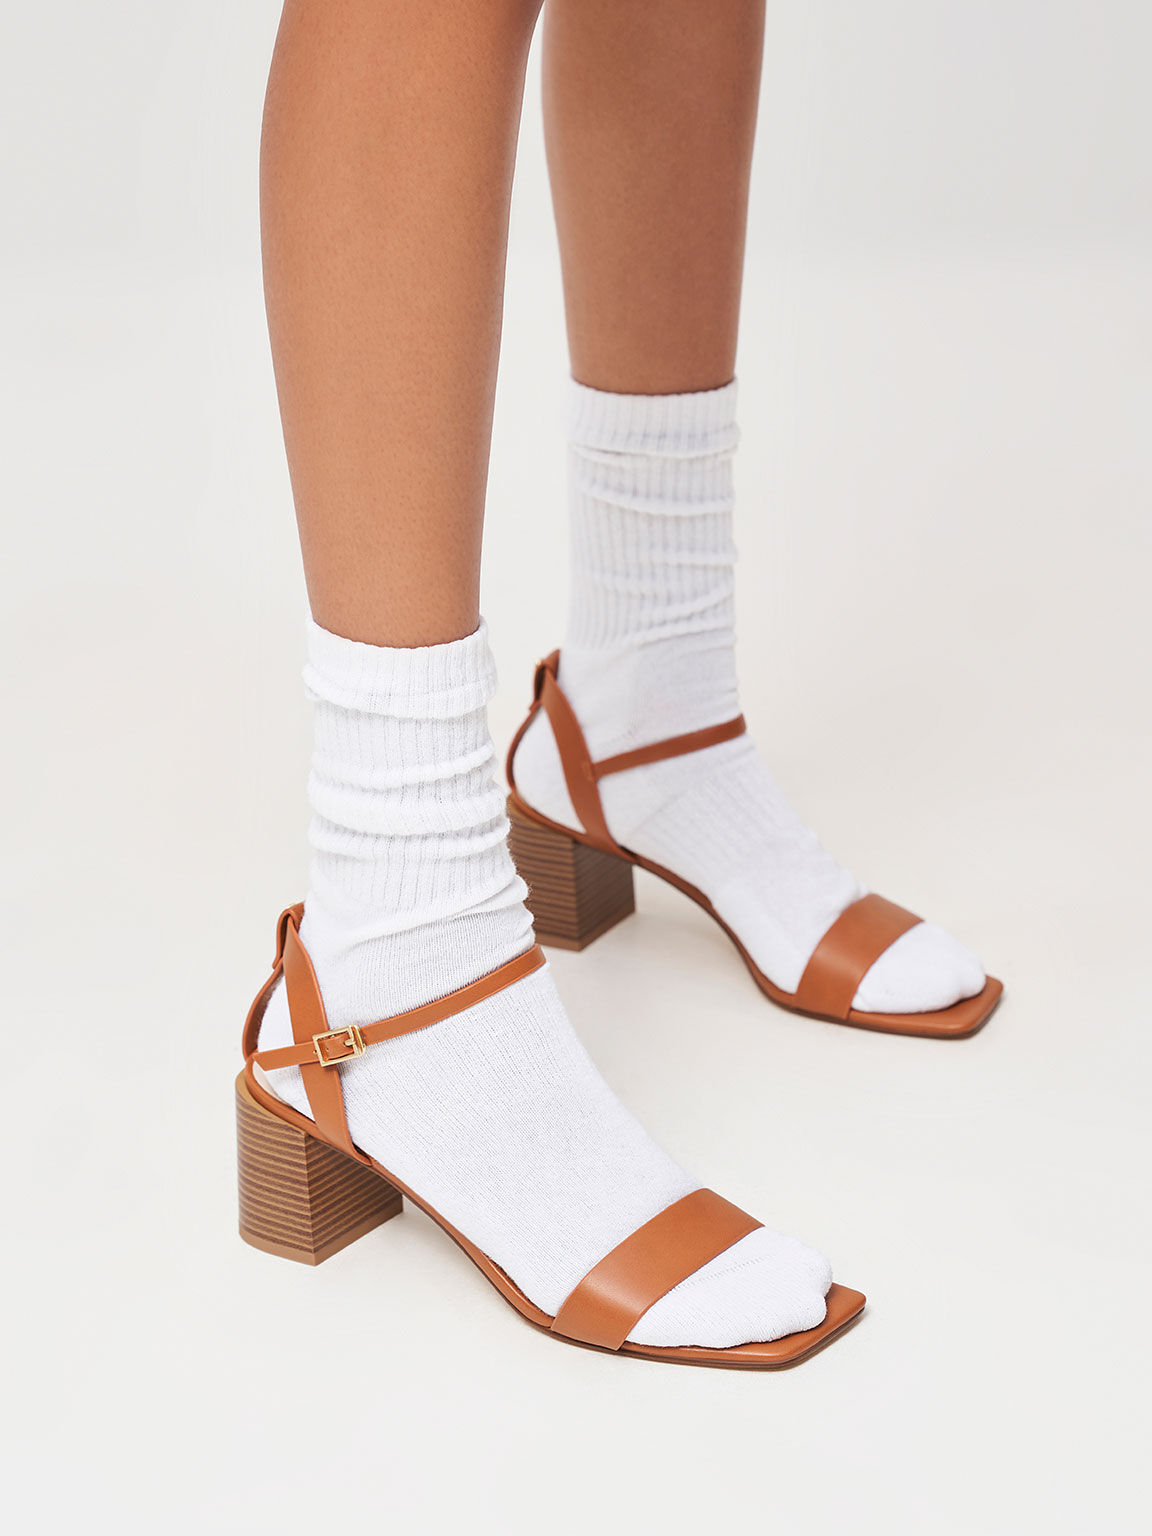 Ankle Strap Stacked Heel Sandals, Caramel, hi-res